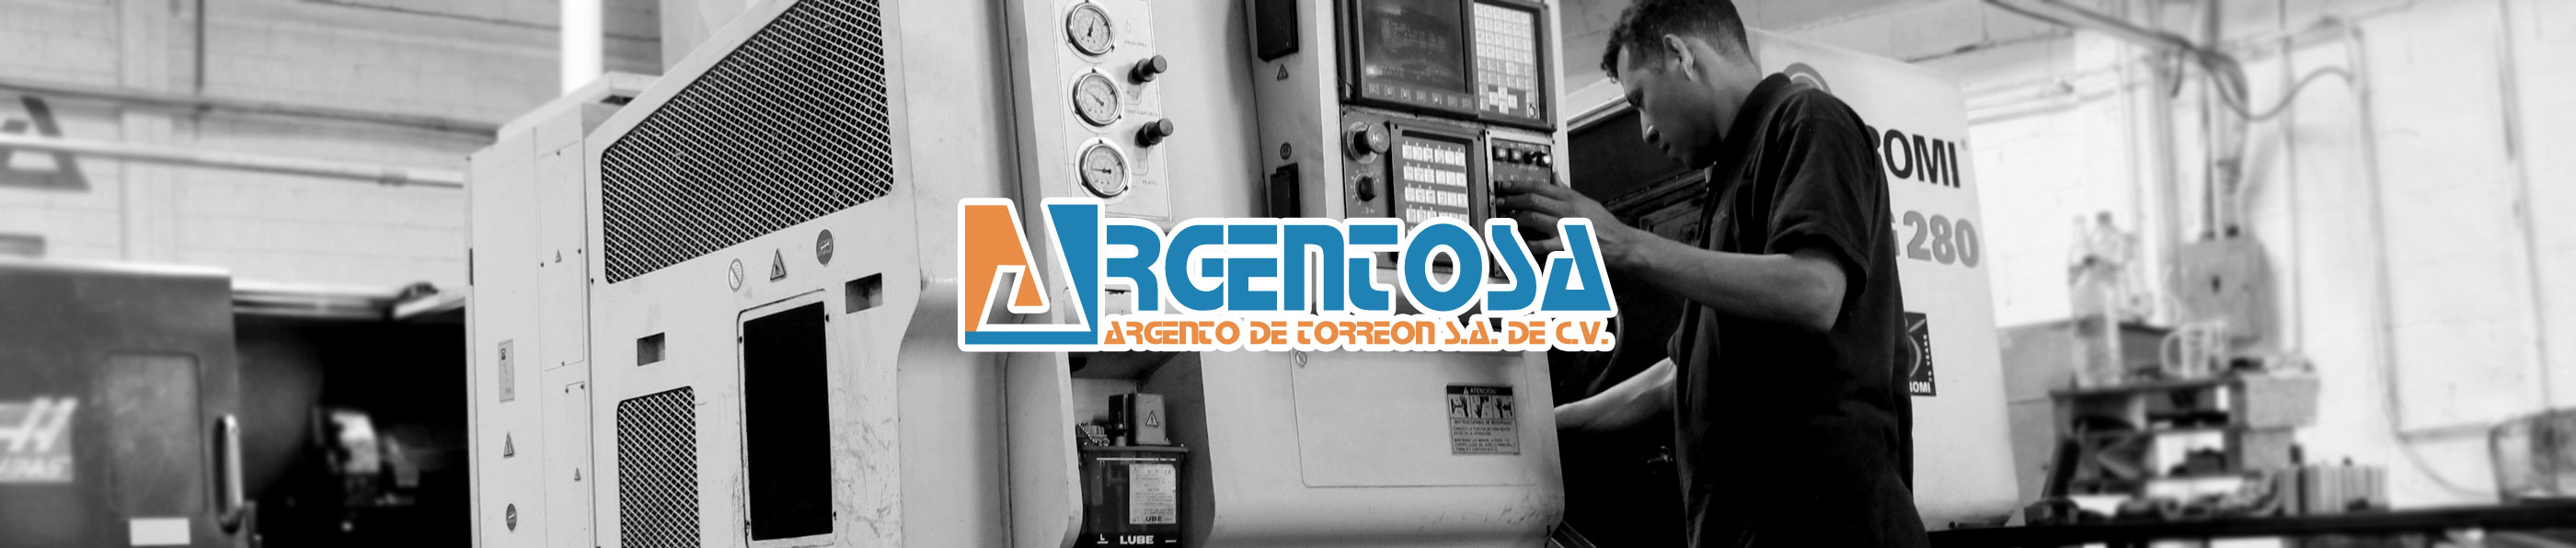 Argentosa - Fabricación y reparación de Bombas tipo turbina para pozo profundo